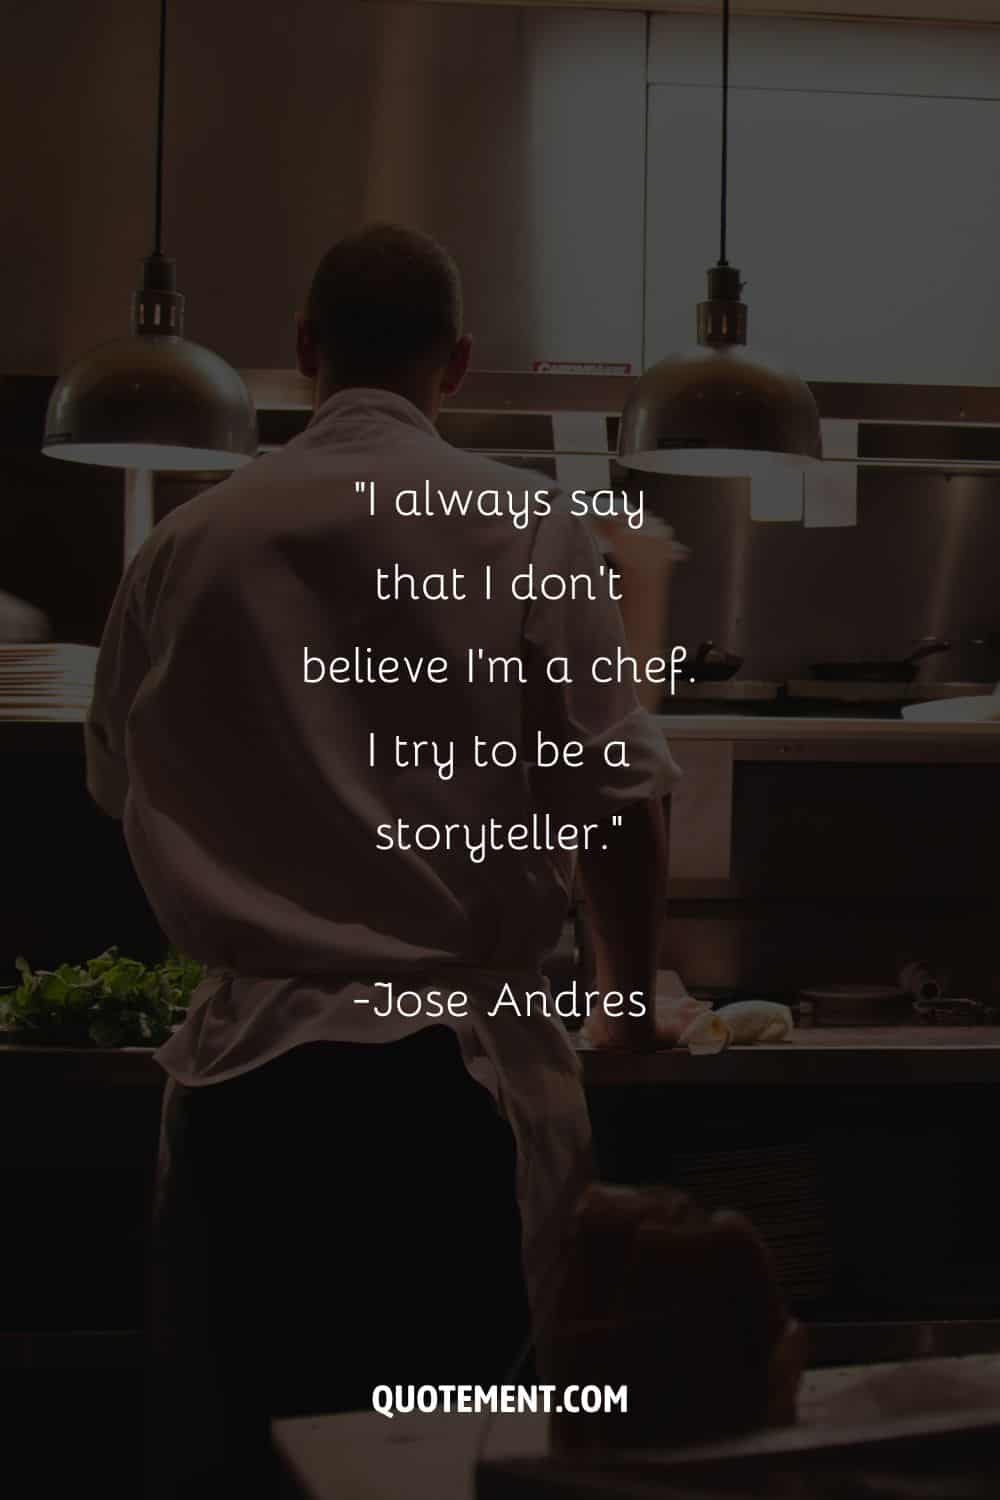 Imagen de un chef en la cocina representando una cita sobre chefs.